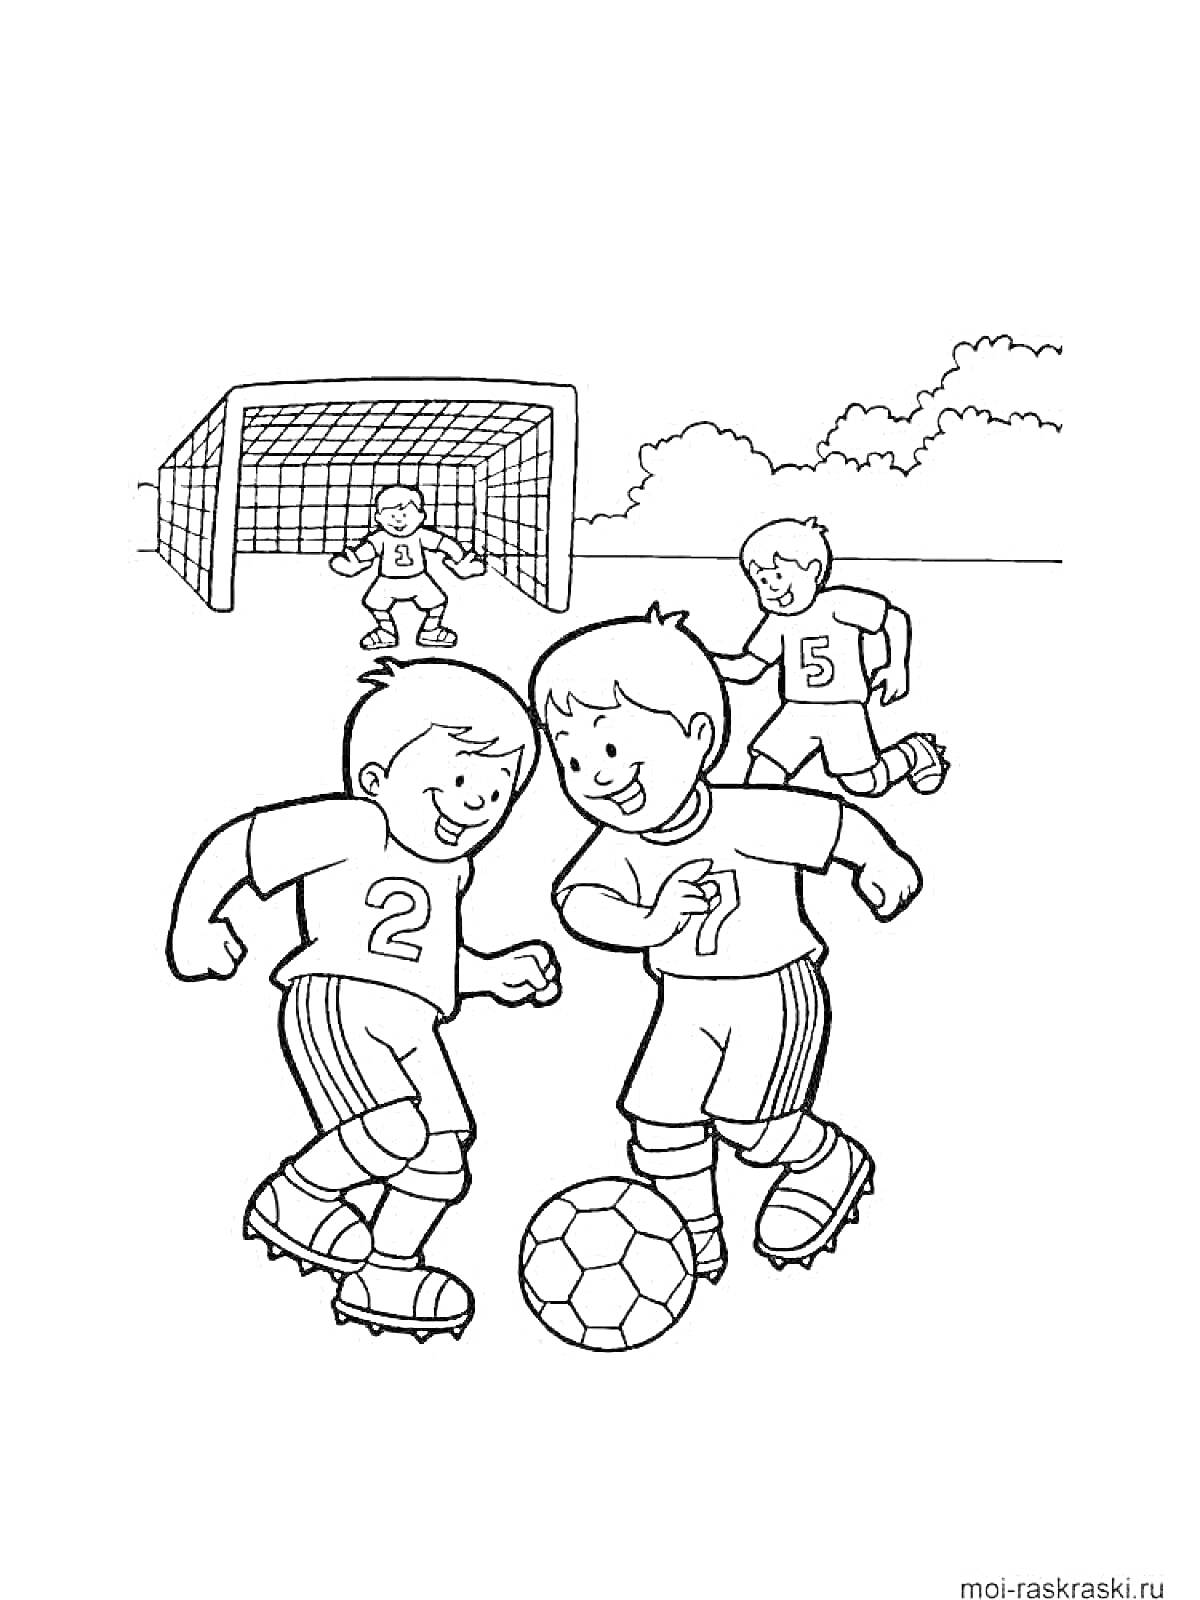 Раскраска Дети играют в футбол перед воротами